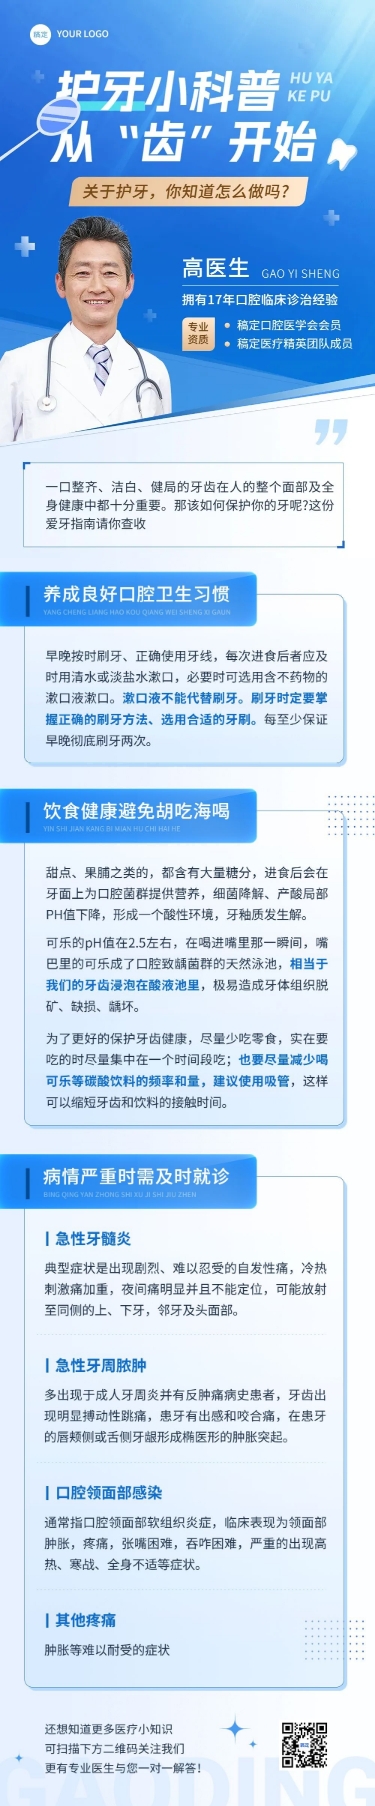 医疗知识科普宣传推广文章长图